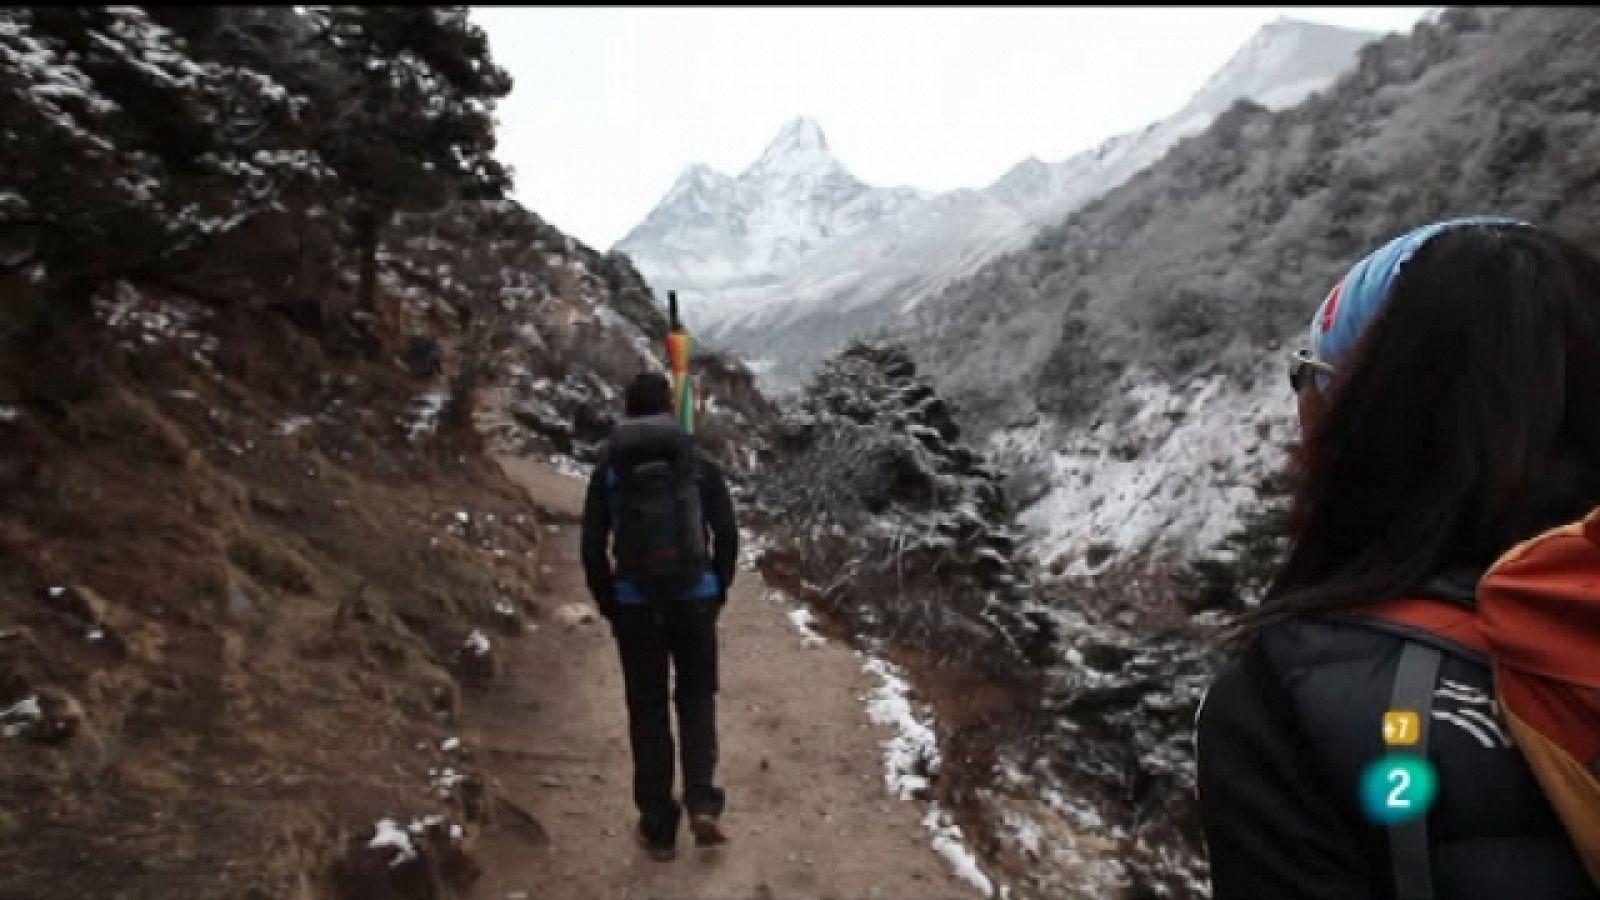 Desafío 14+1: Everest sin O2 (Edurne Pasabán) - Capítulo 5